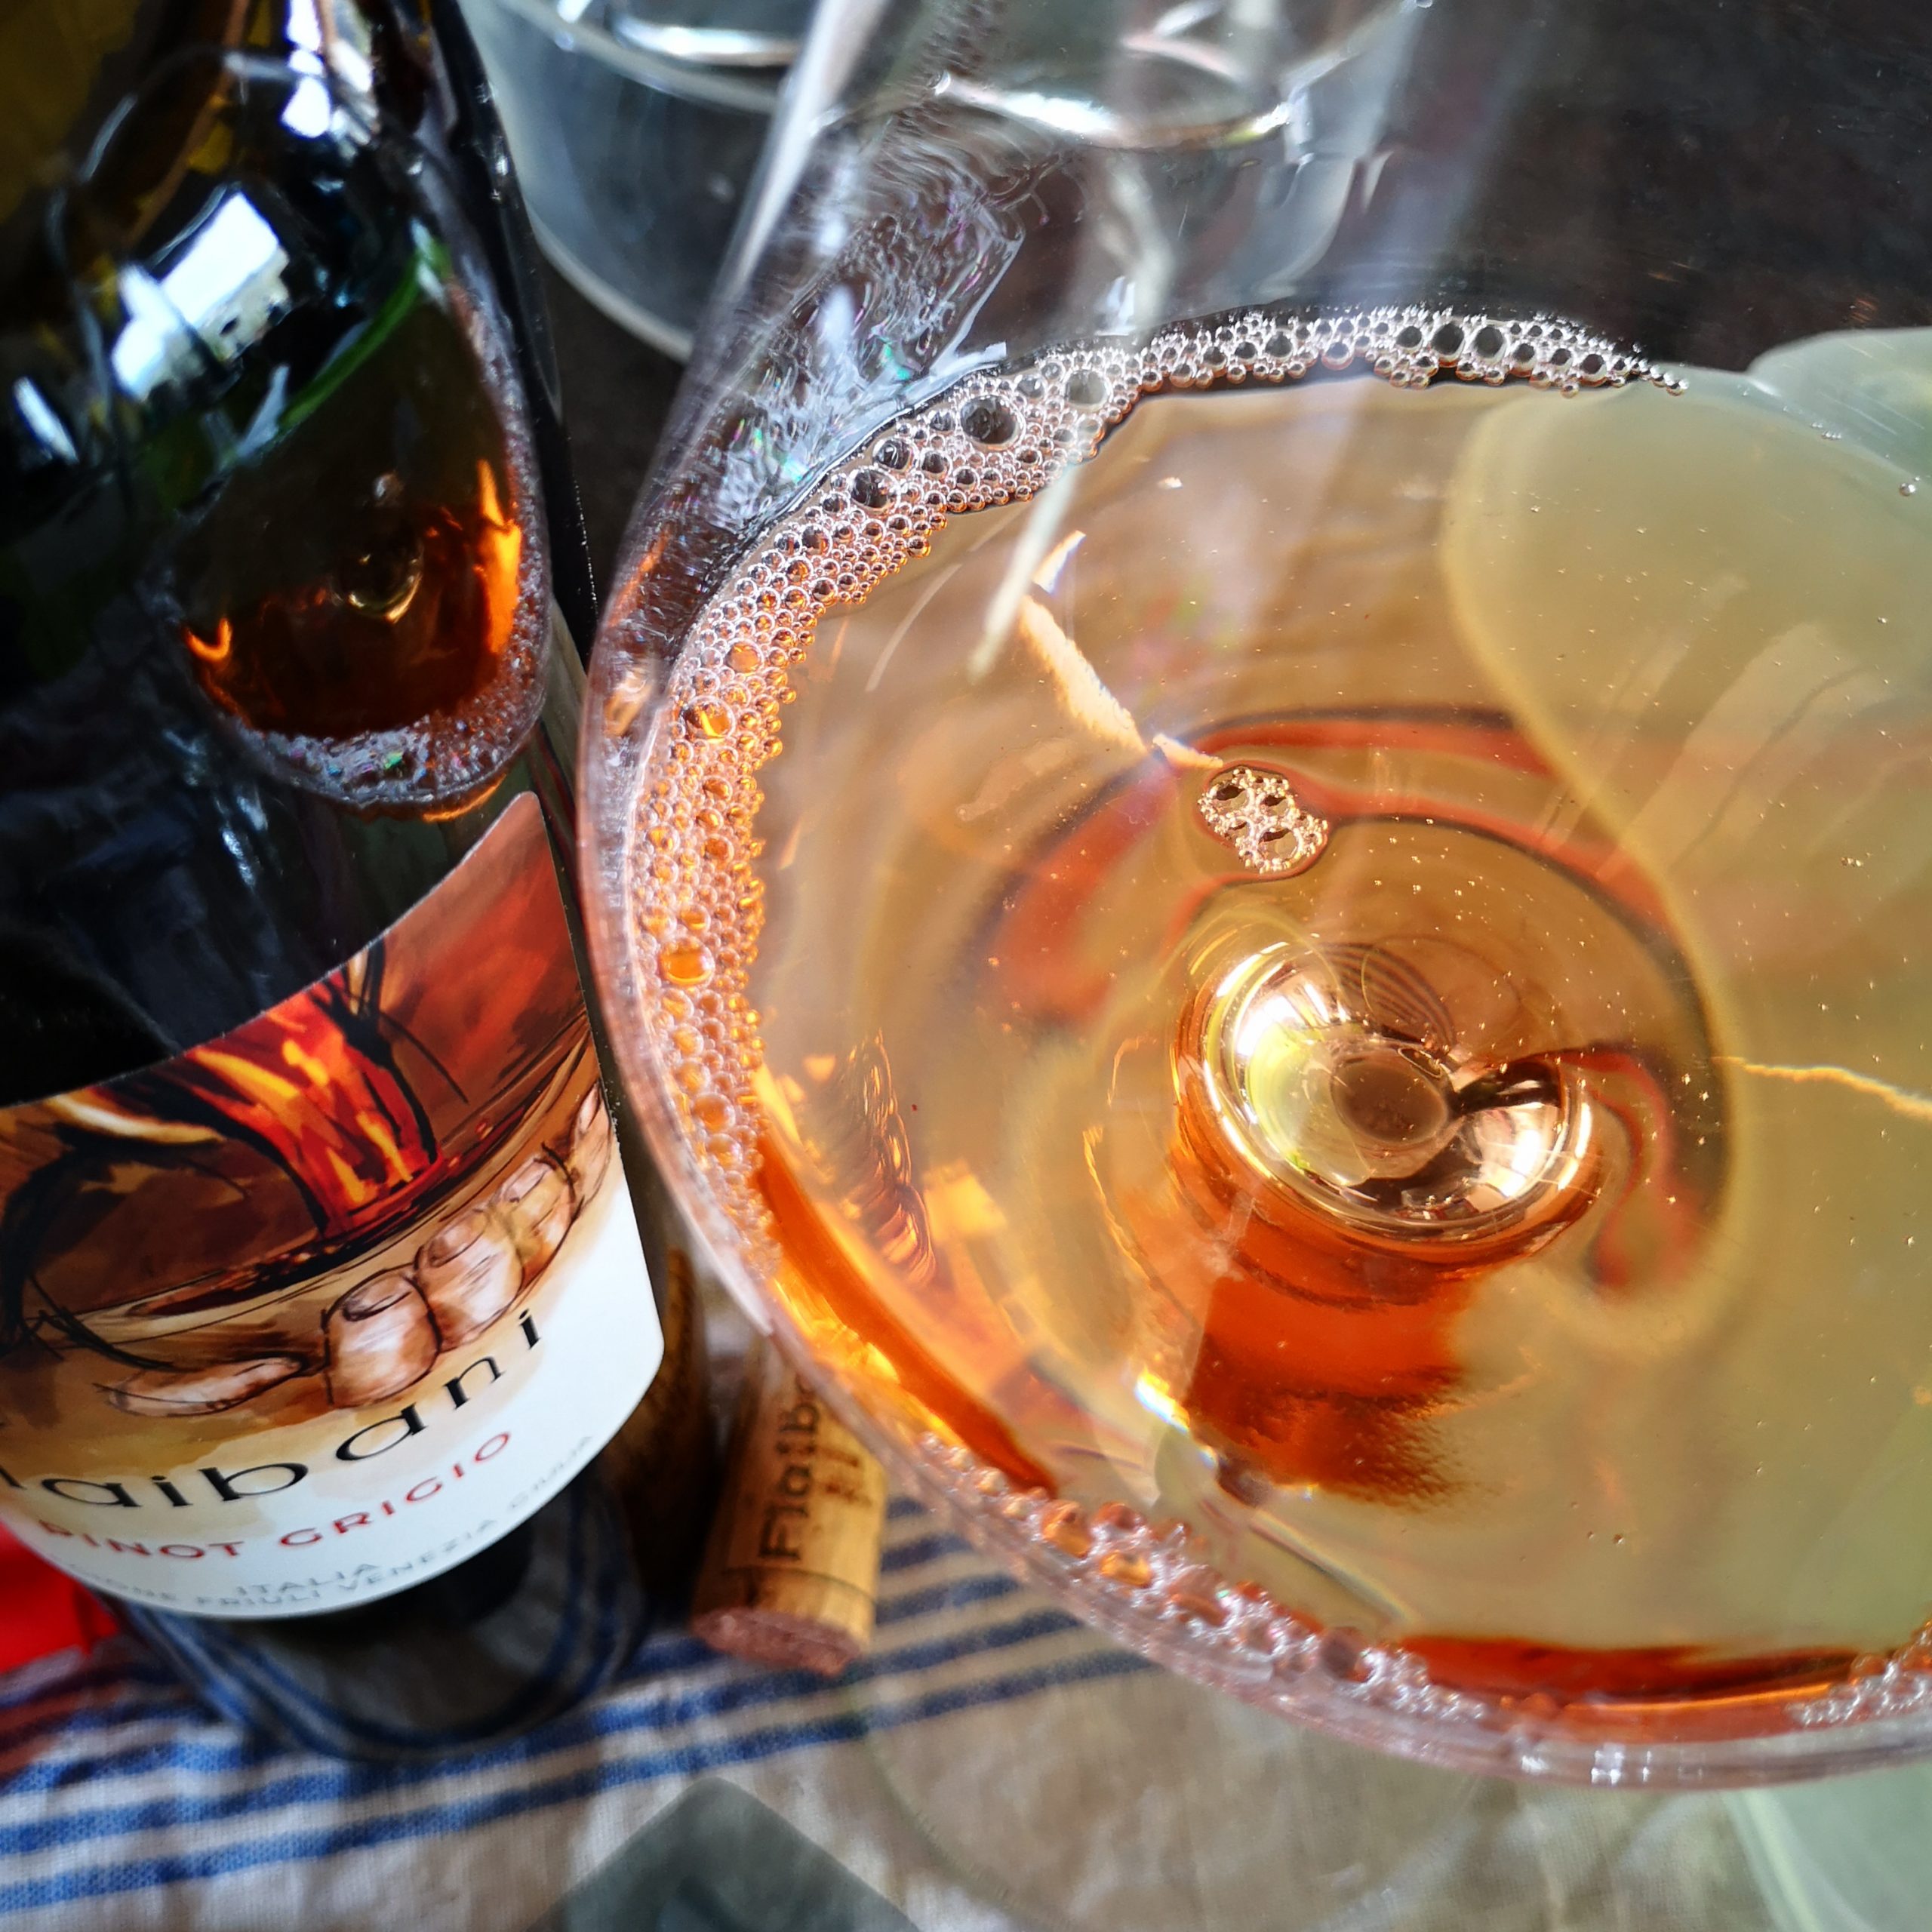 Enonauta/Degustazione di Vino #200 - Pinot Grigio 2018 - Flaibani | Pinot Grigio veramente ramato e coinvolgente